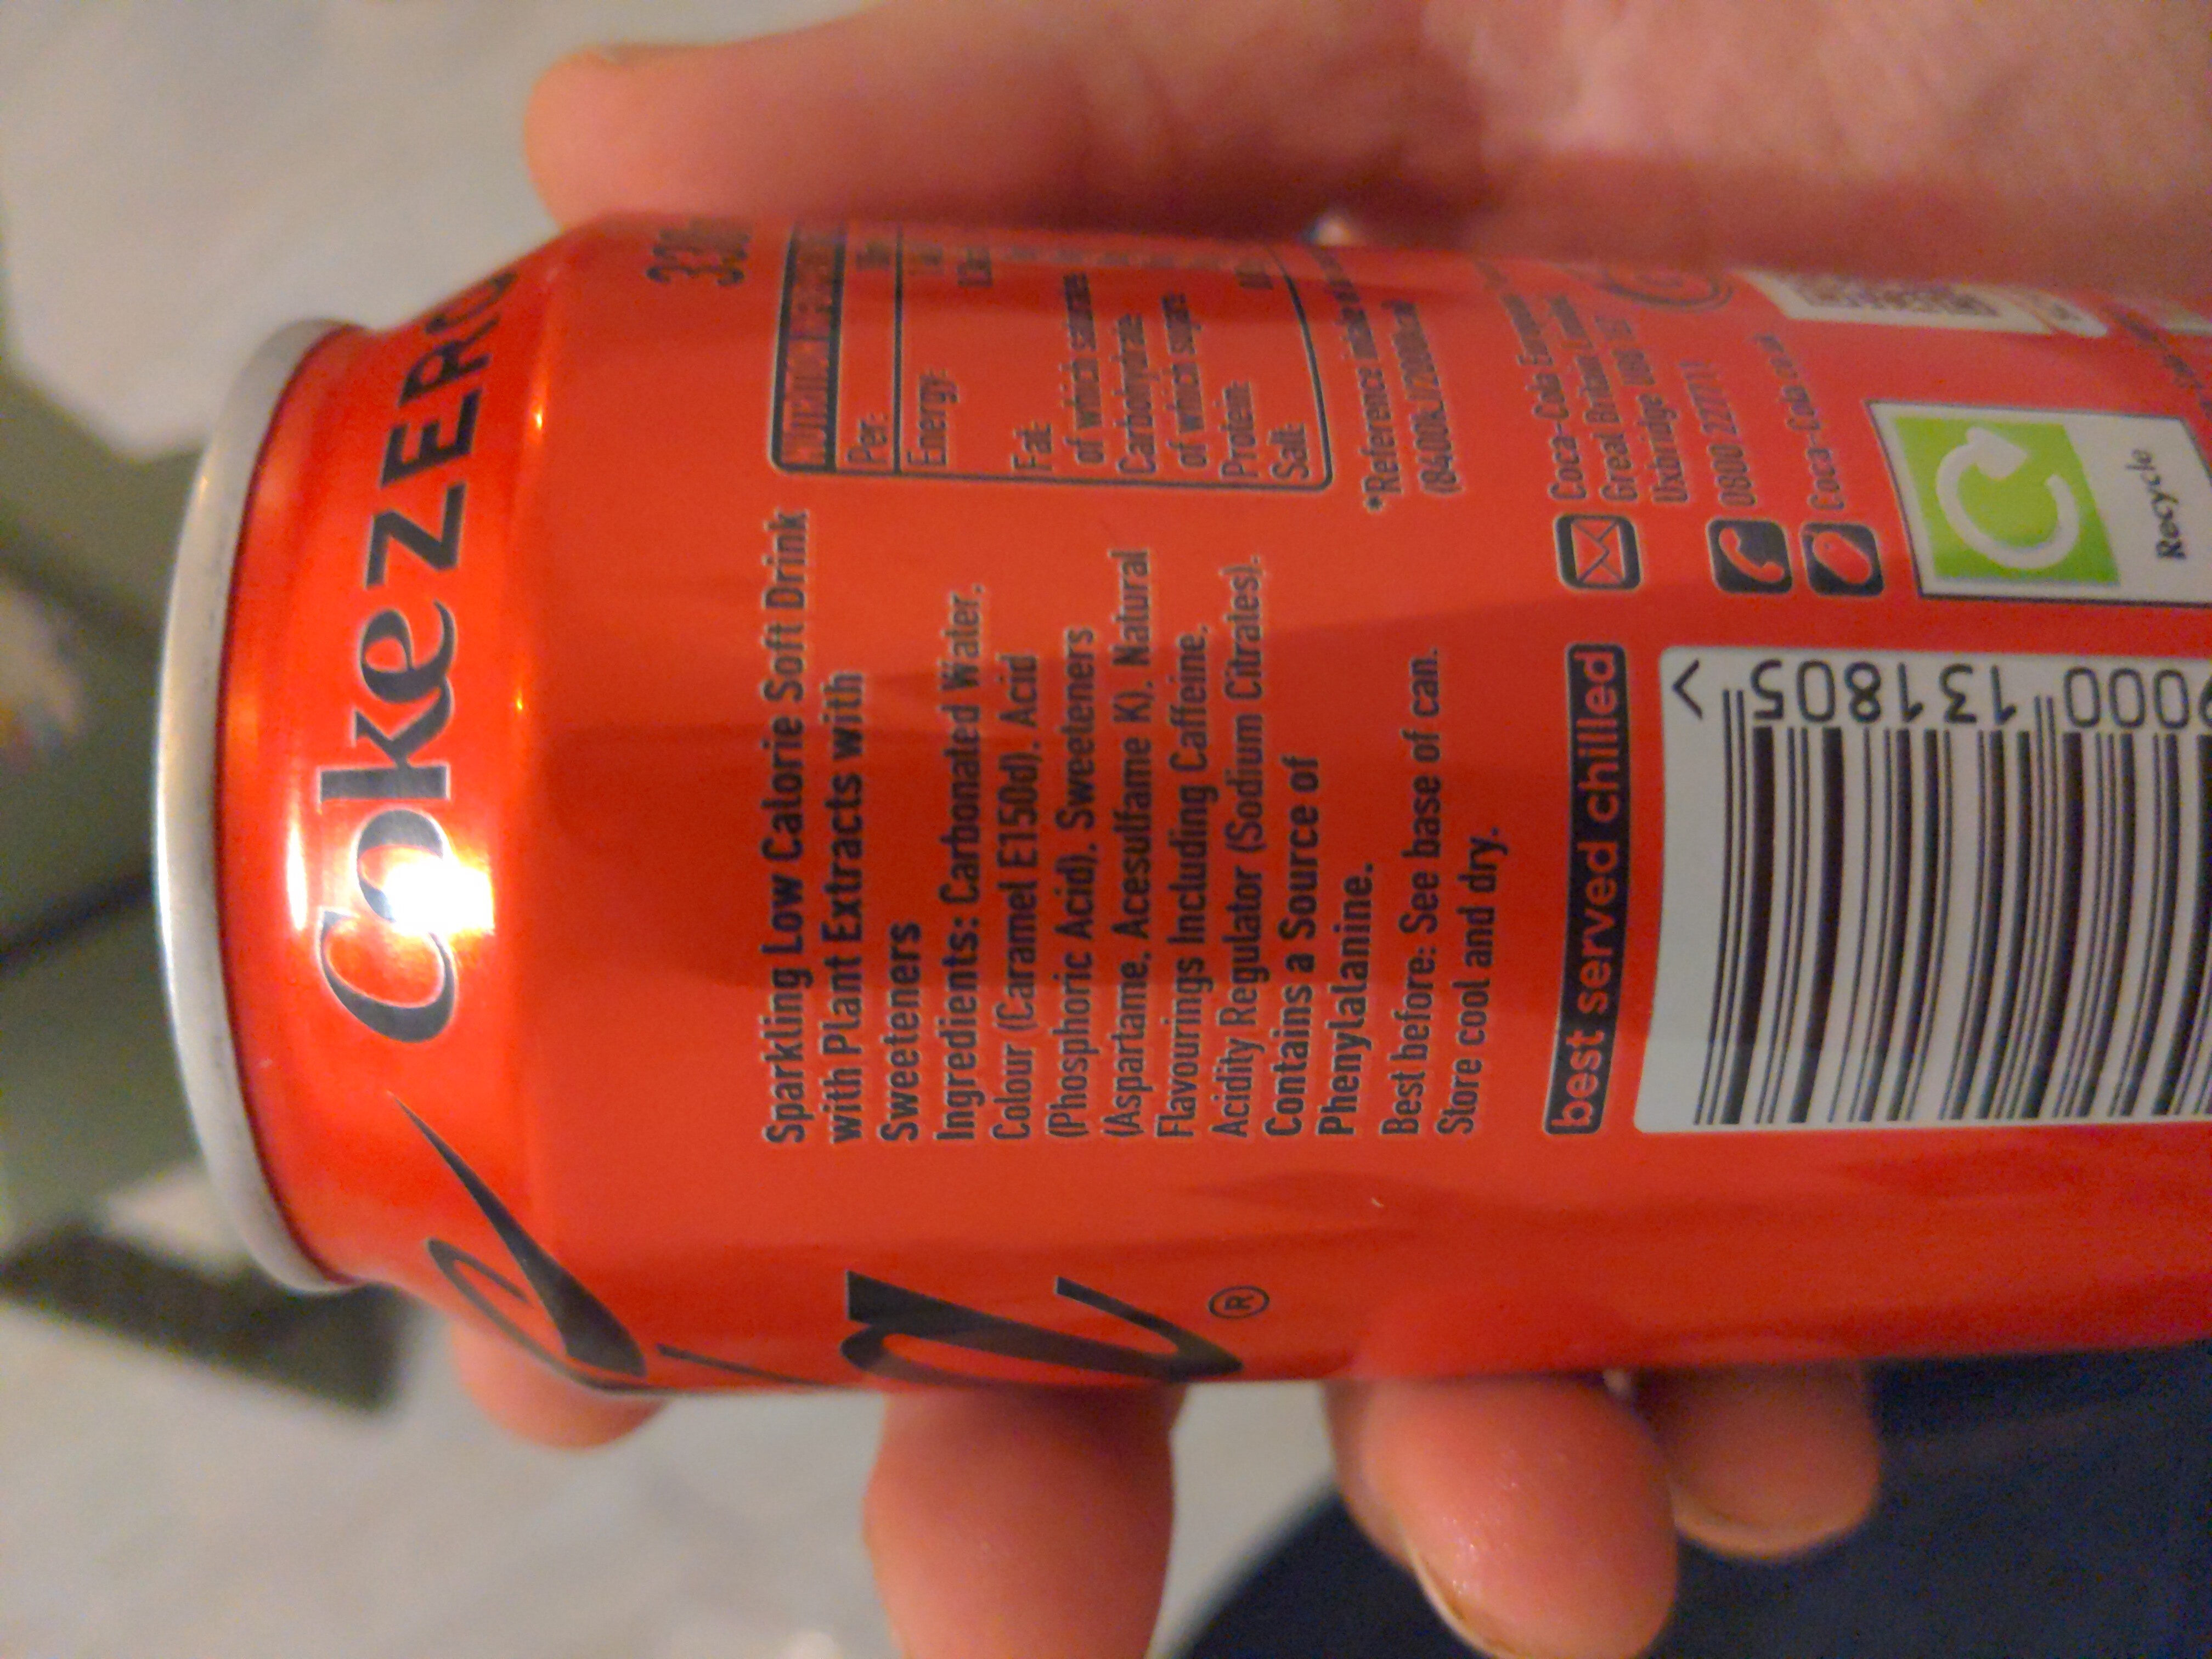 Coca cola 330 zero - Ingredients